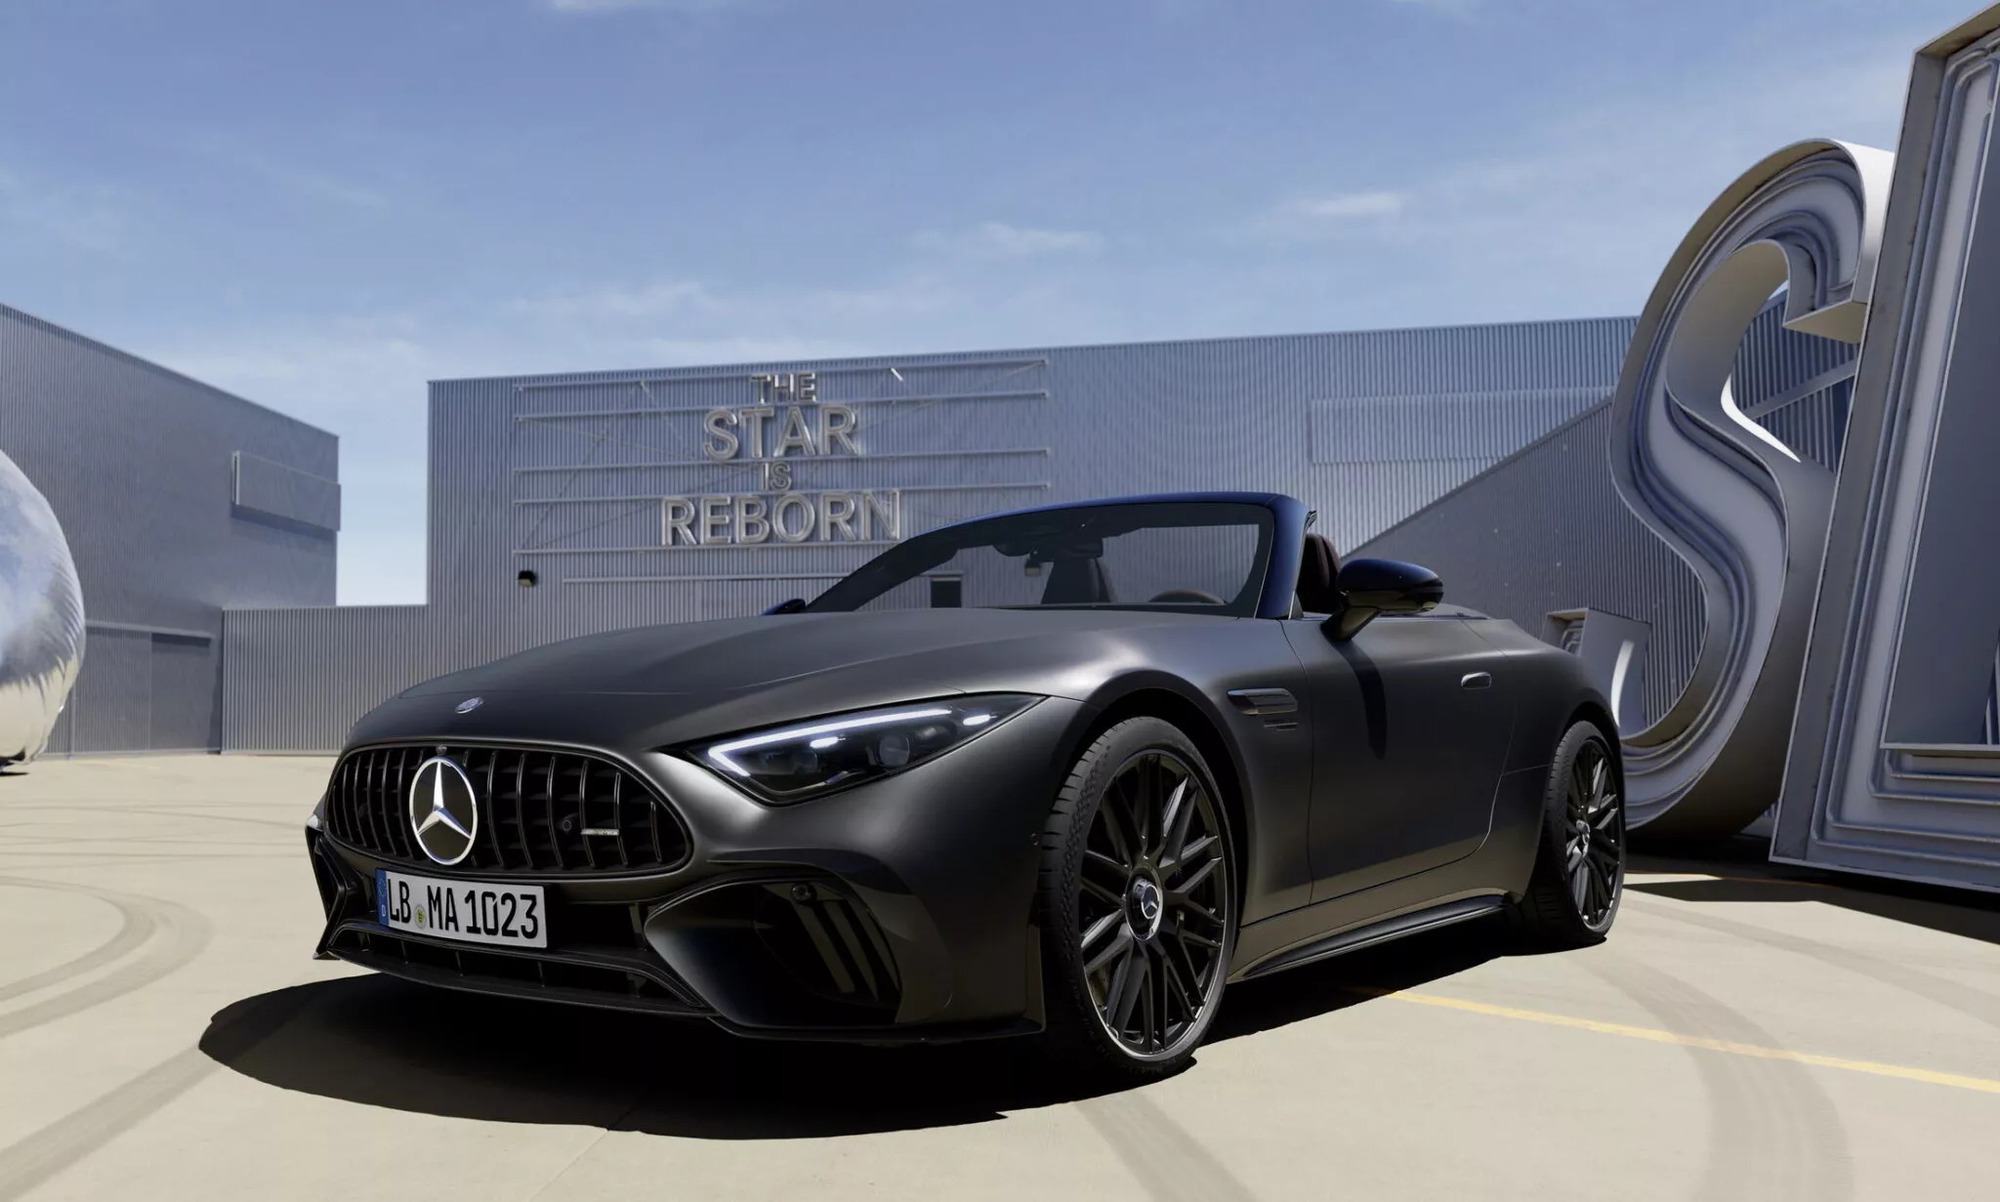 Mercedes-Maybach sắp có loạt xe siêu sang mới cho giới siêu giàu, cạnh tranh Rolls-Royce, Bentley- Ảnh 3.